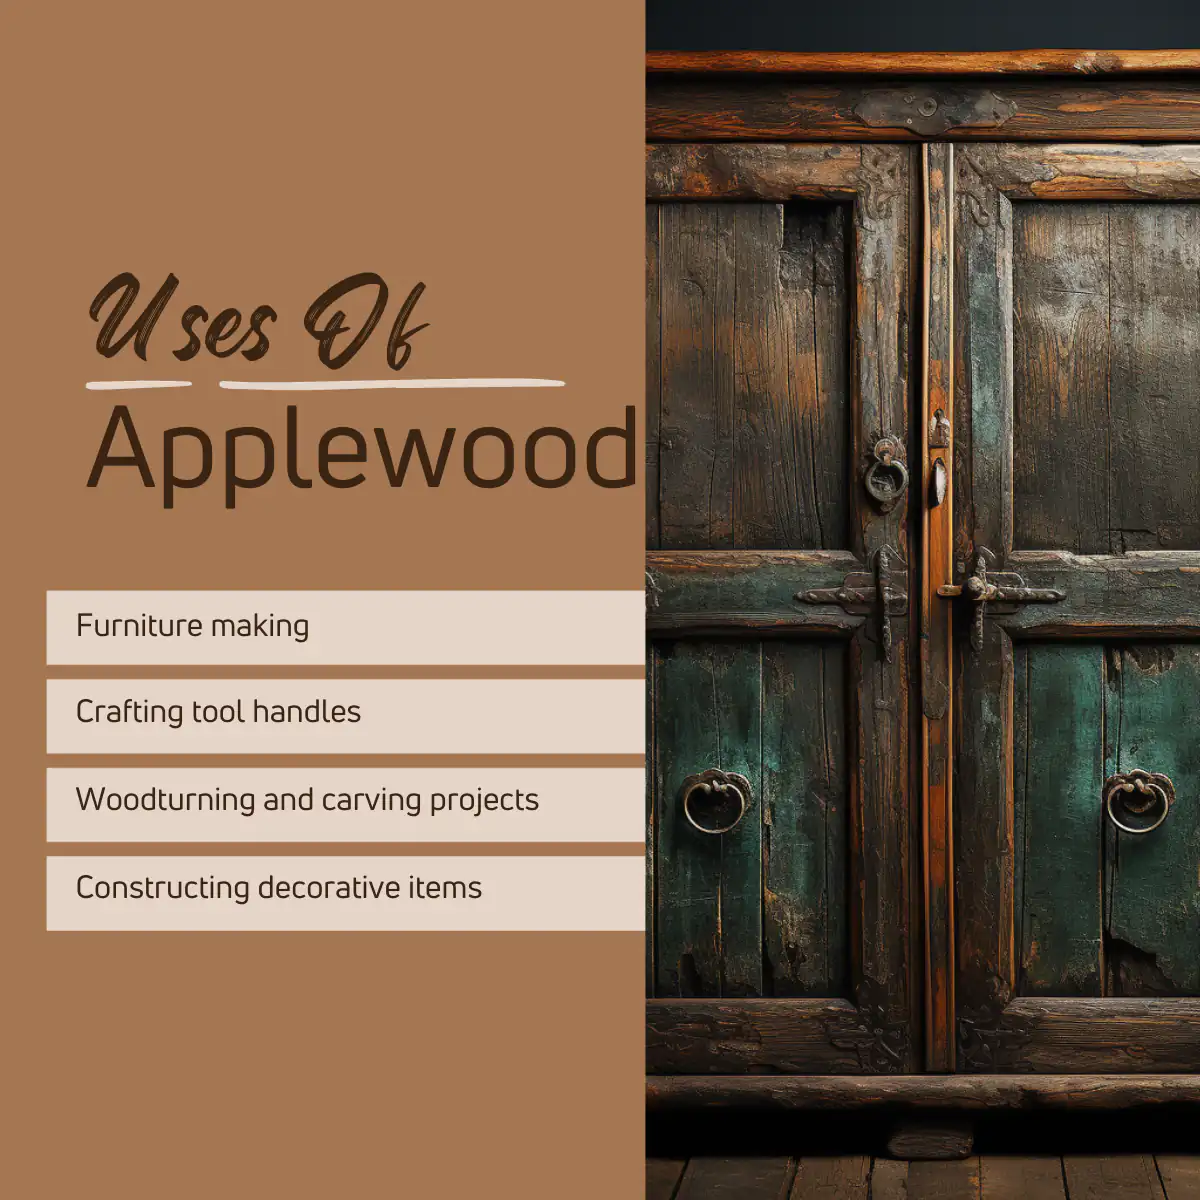 Uses of apple wood